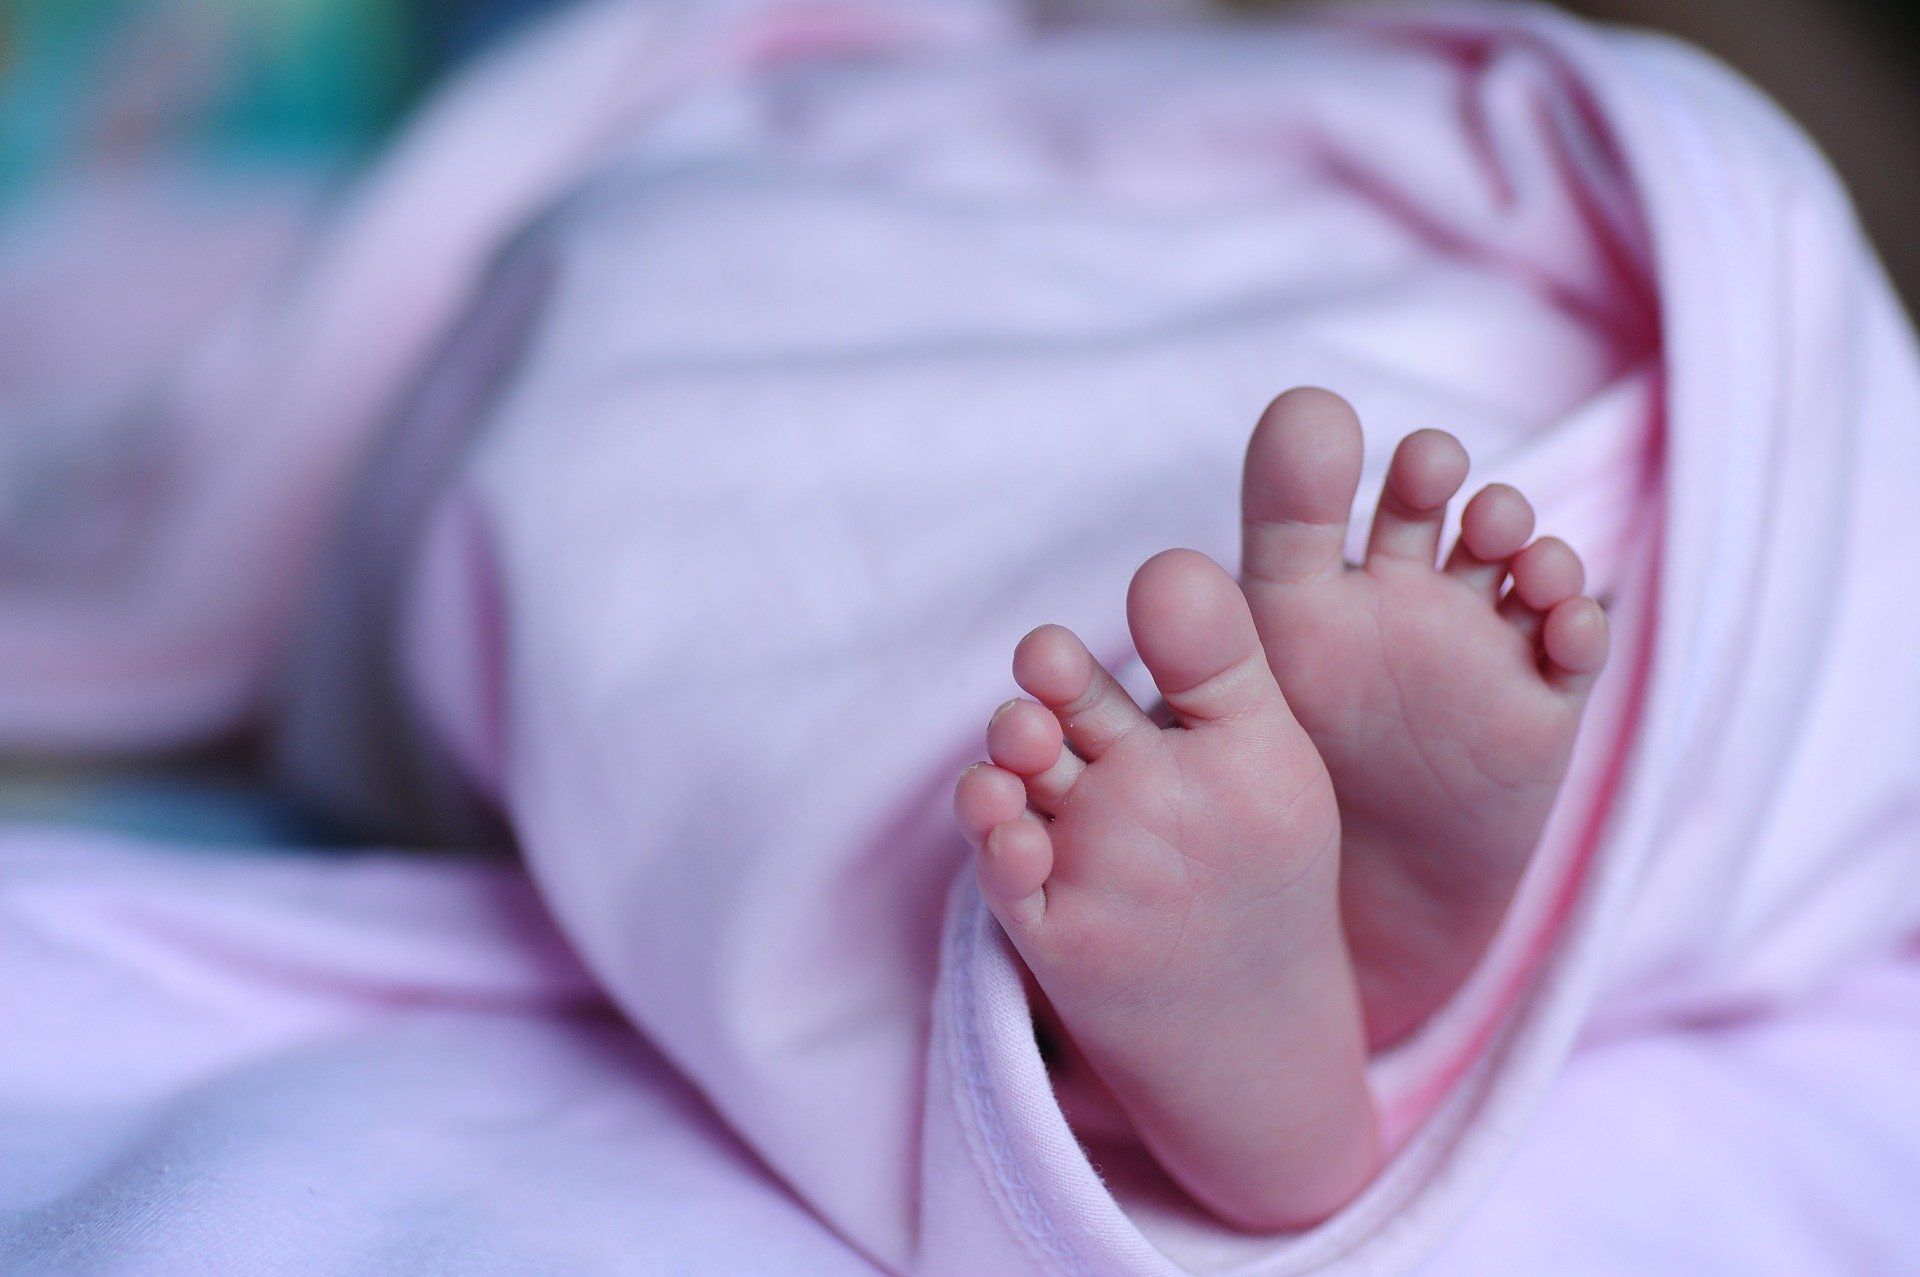 Liszaj u niemowląt – wygląd, rodzaje, przyczyny powstawania i sposoby leczenia